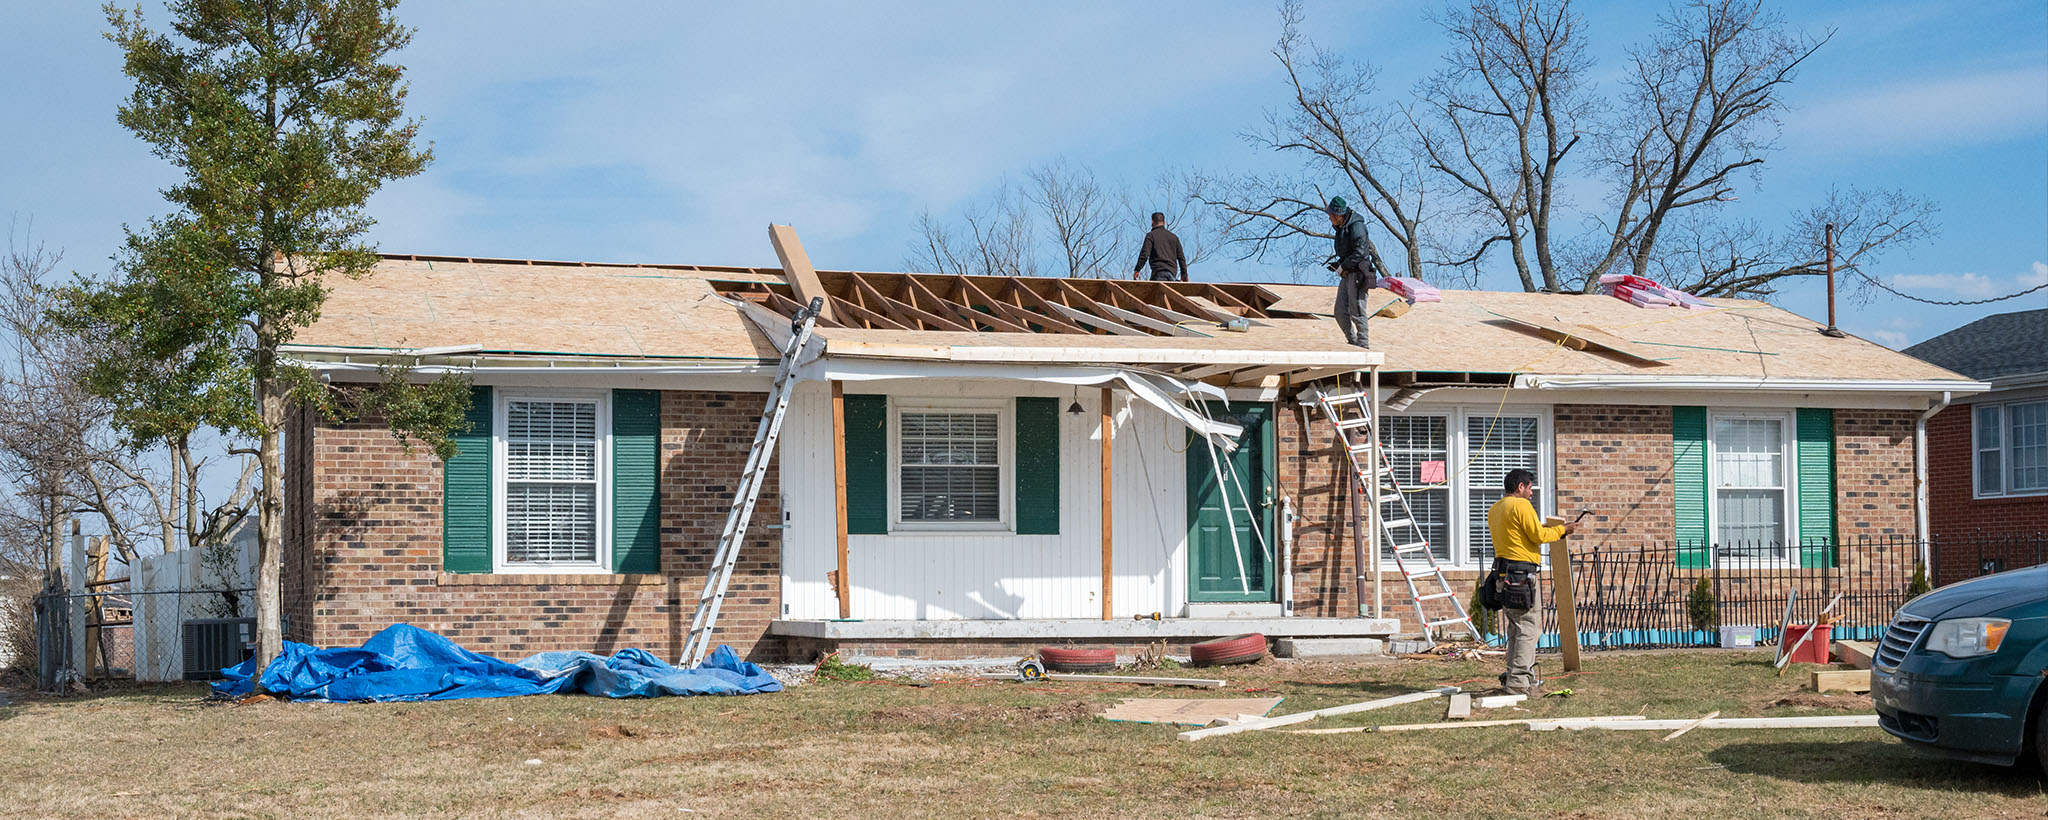 Trabajadoras reparan el techo de una casa